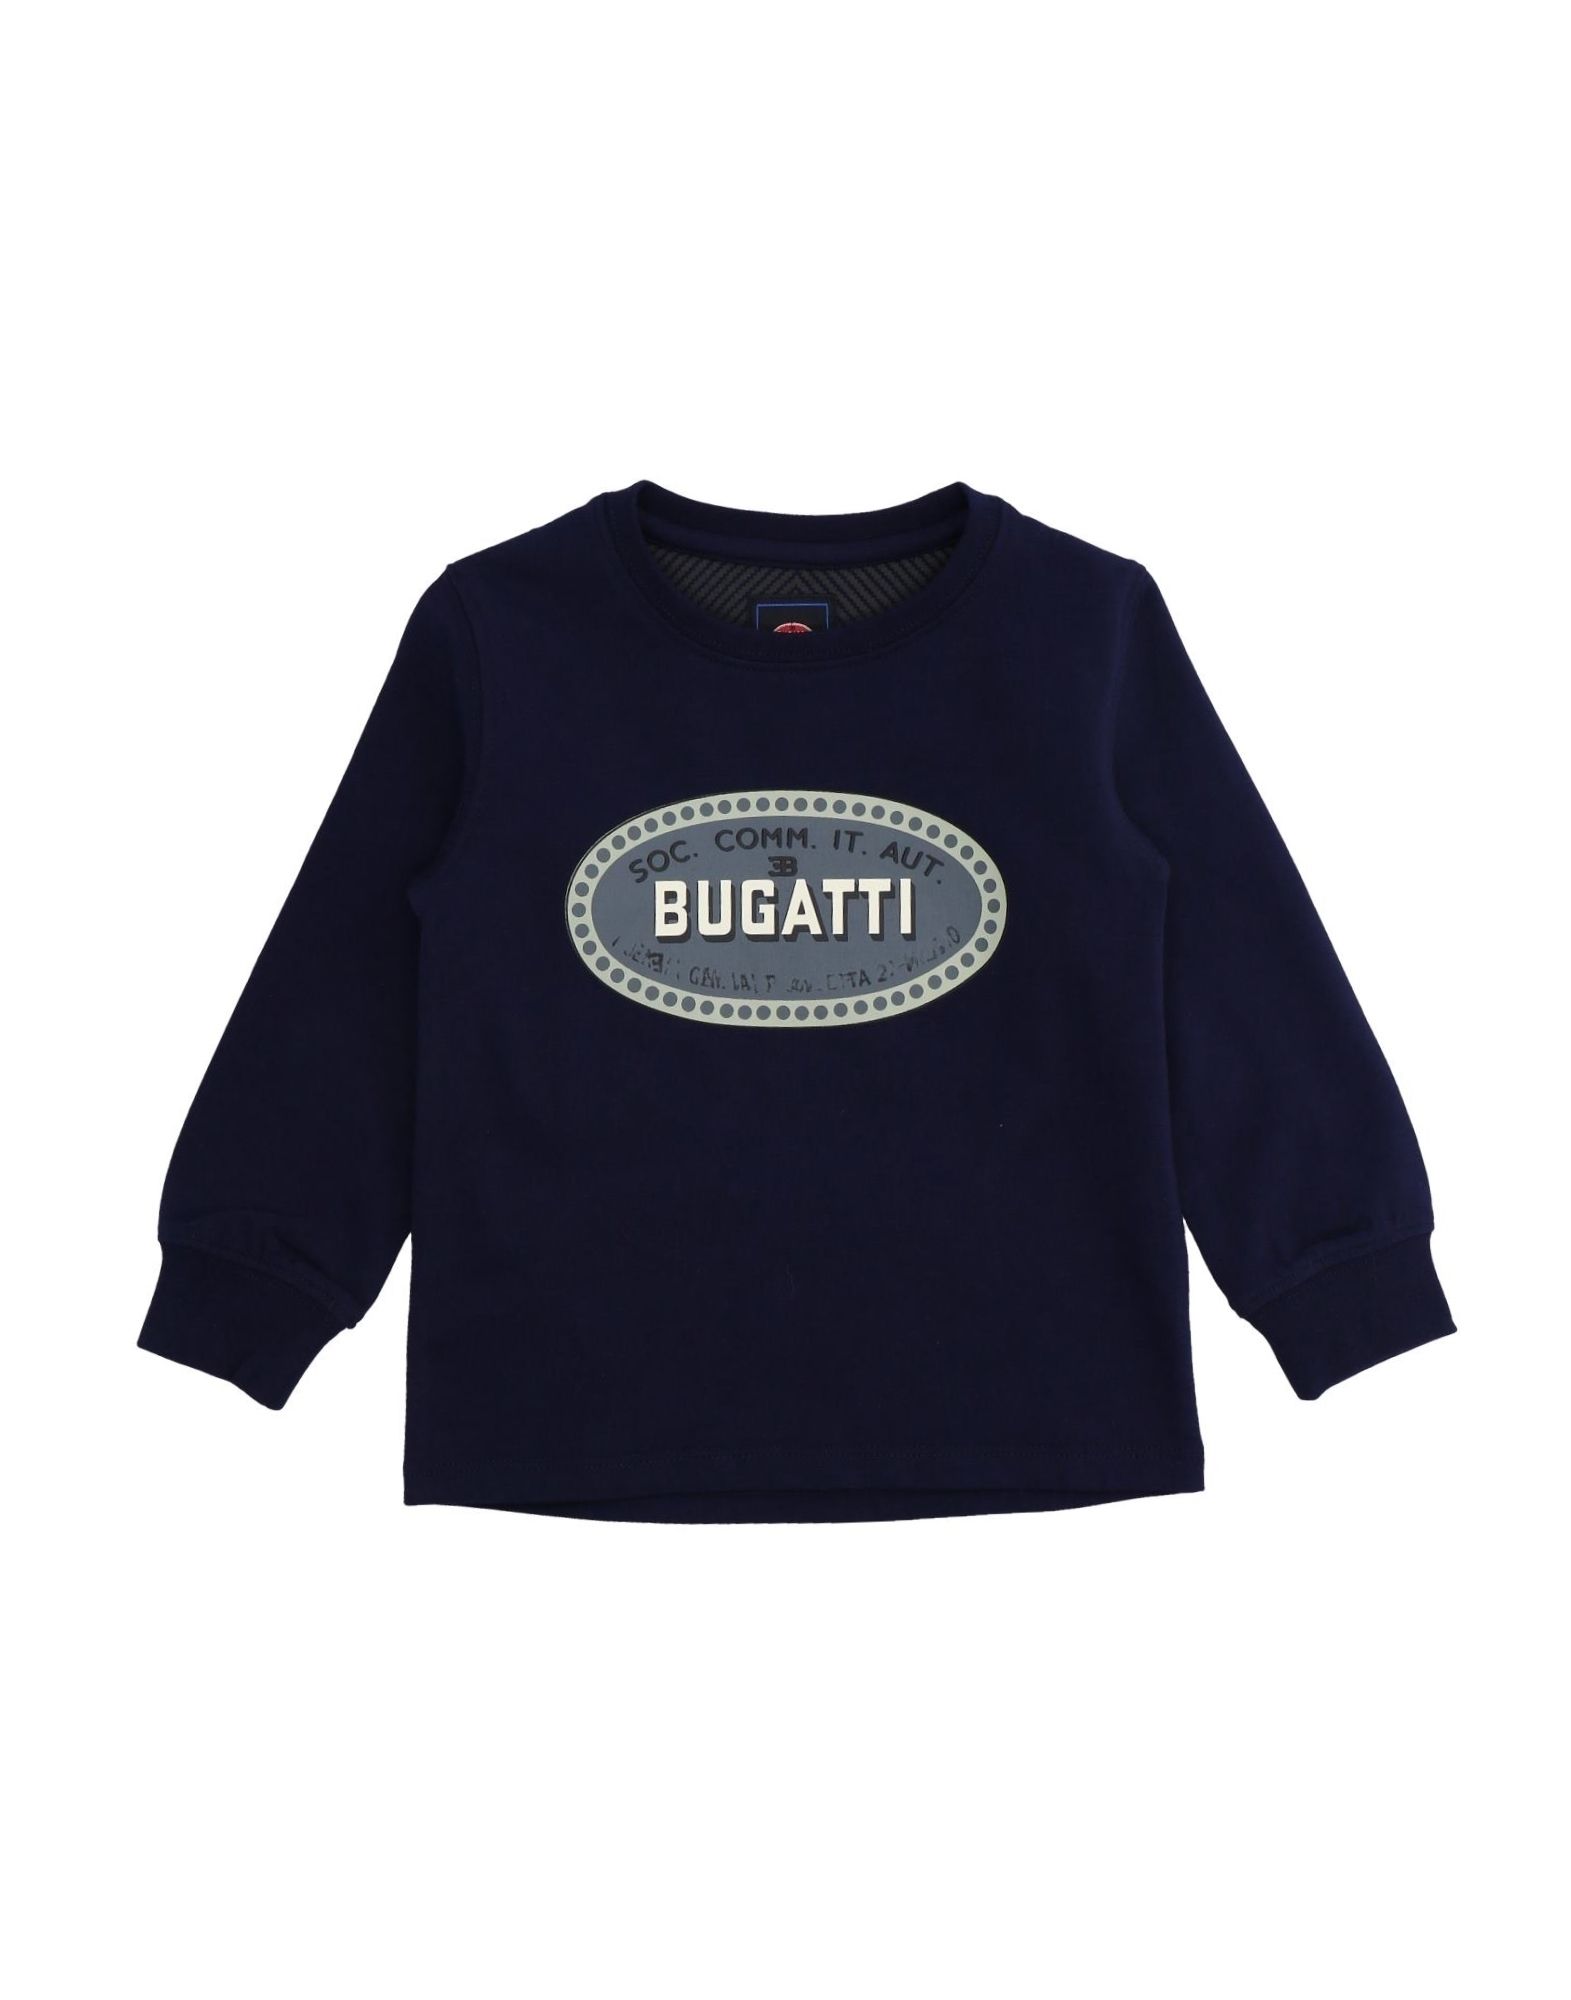 Bugatti jersey. Бугатти бренд одежды.